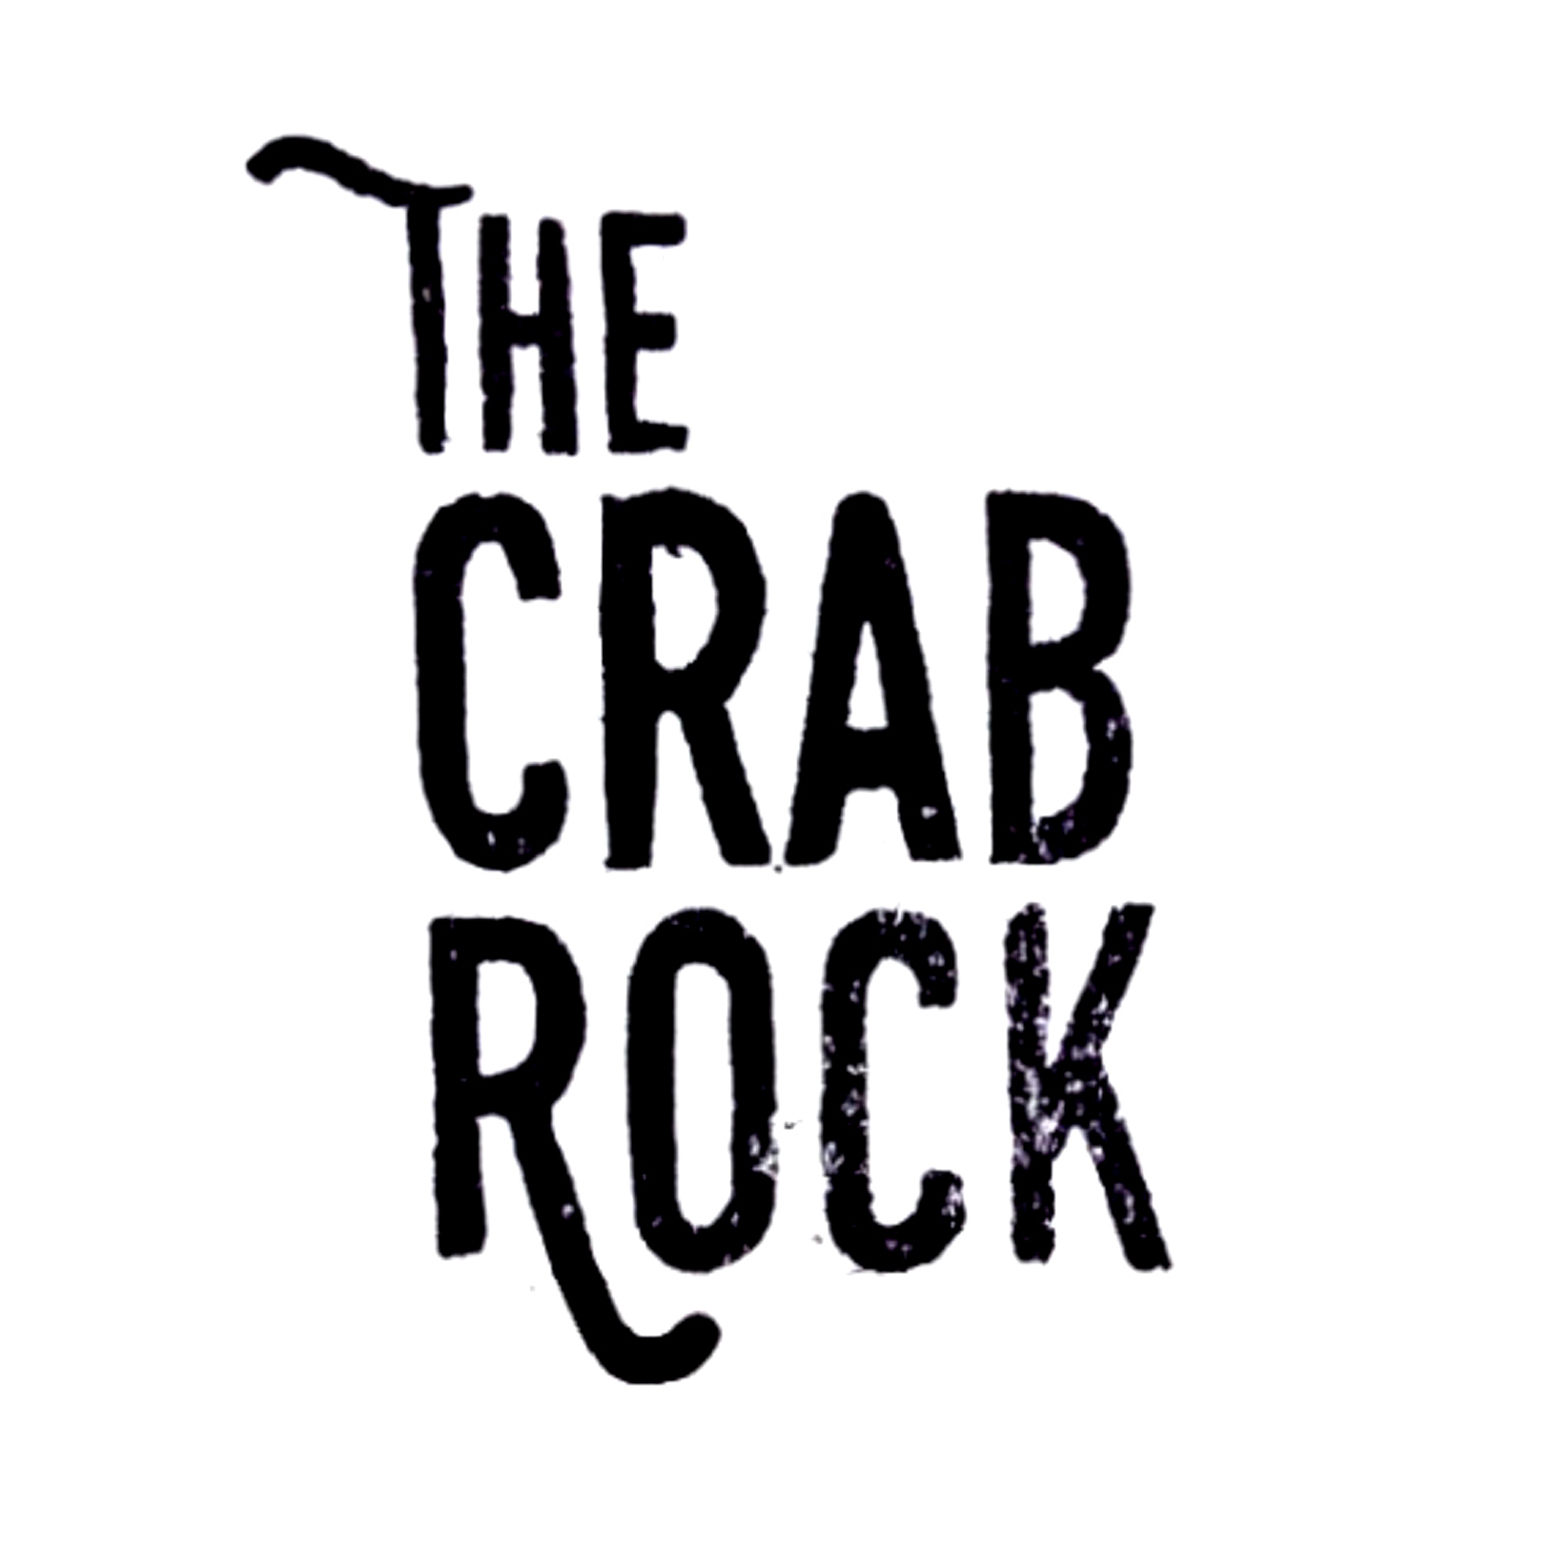 thecrabrock logo